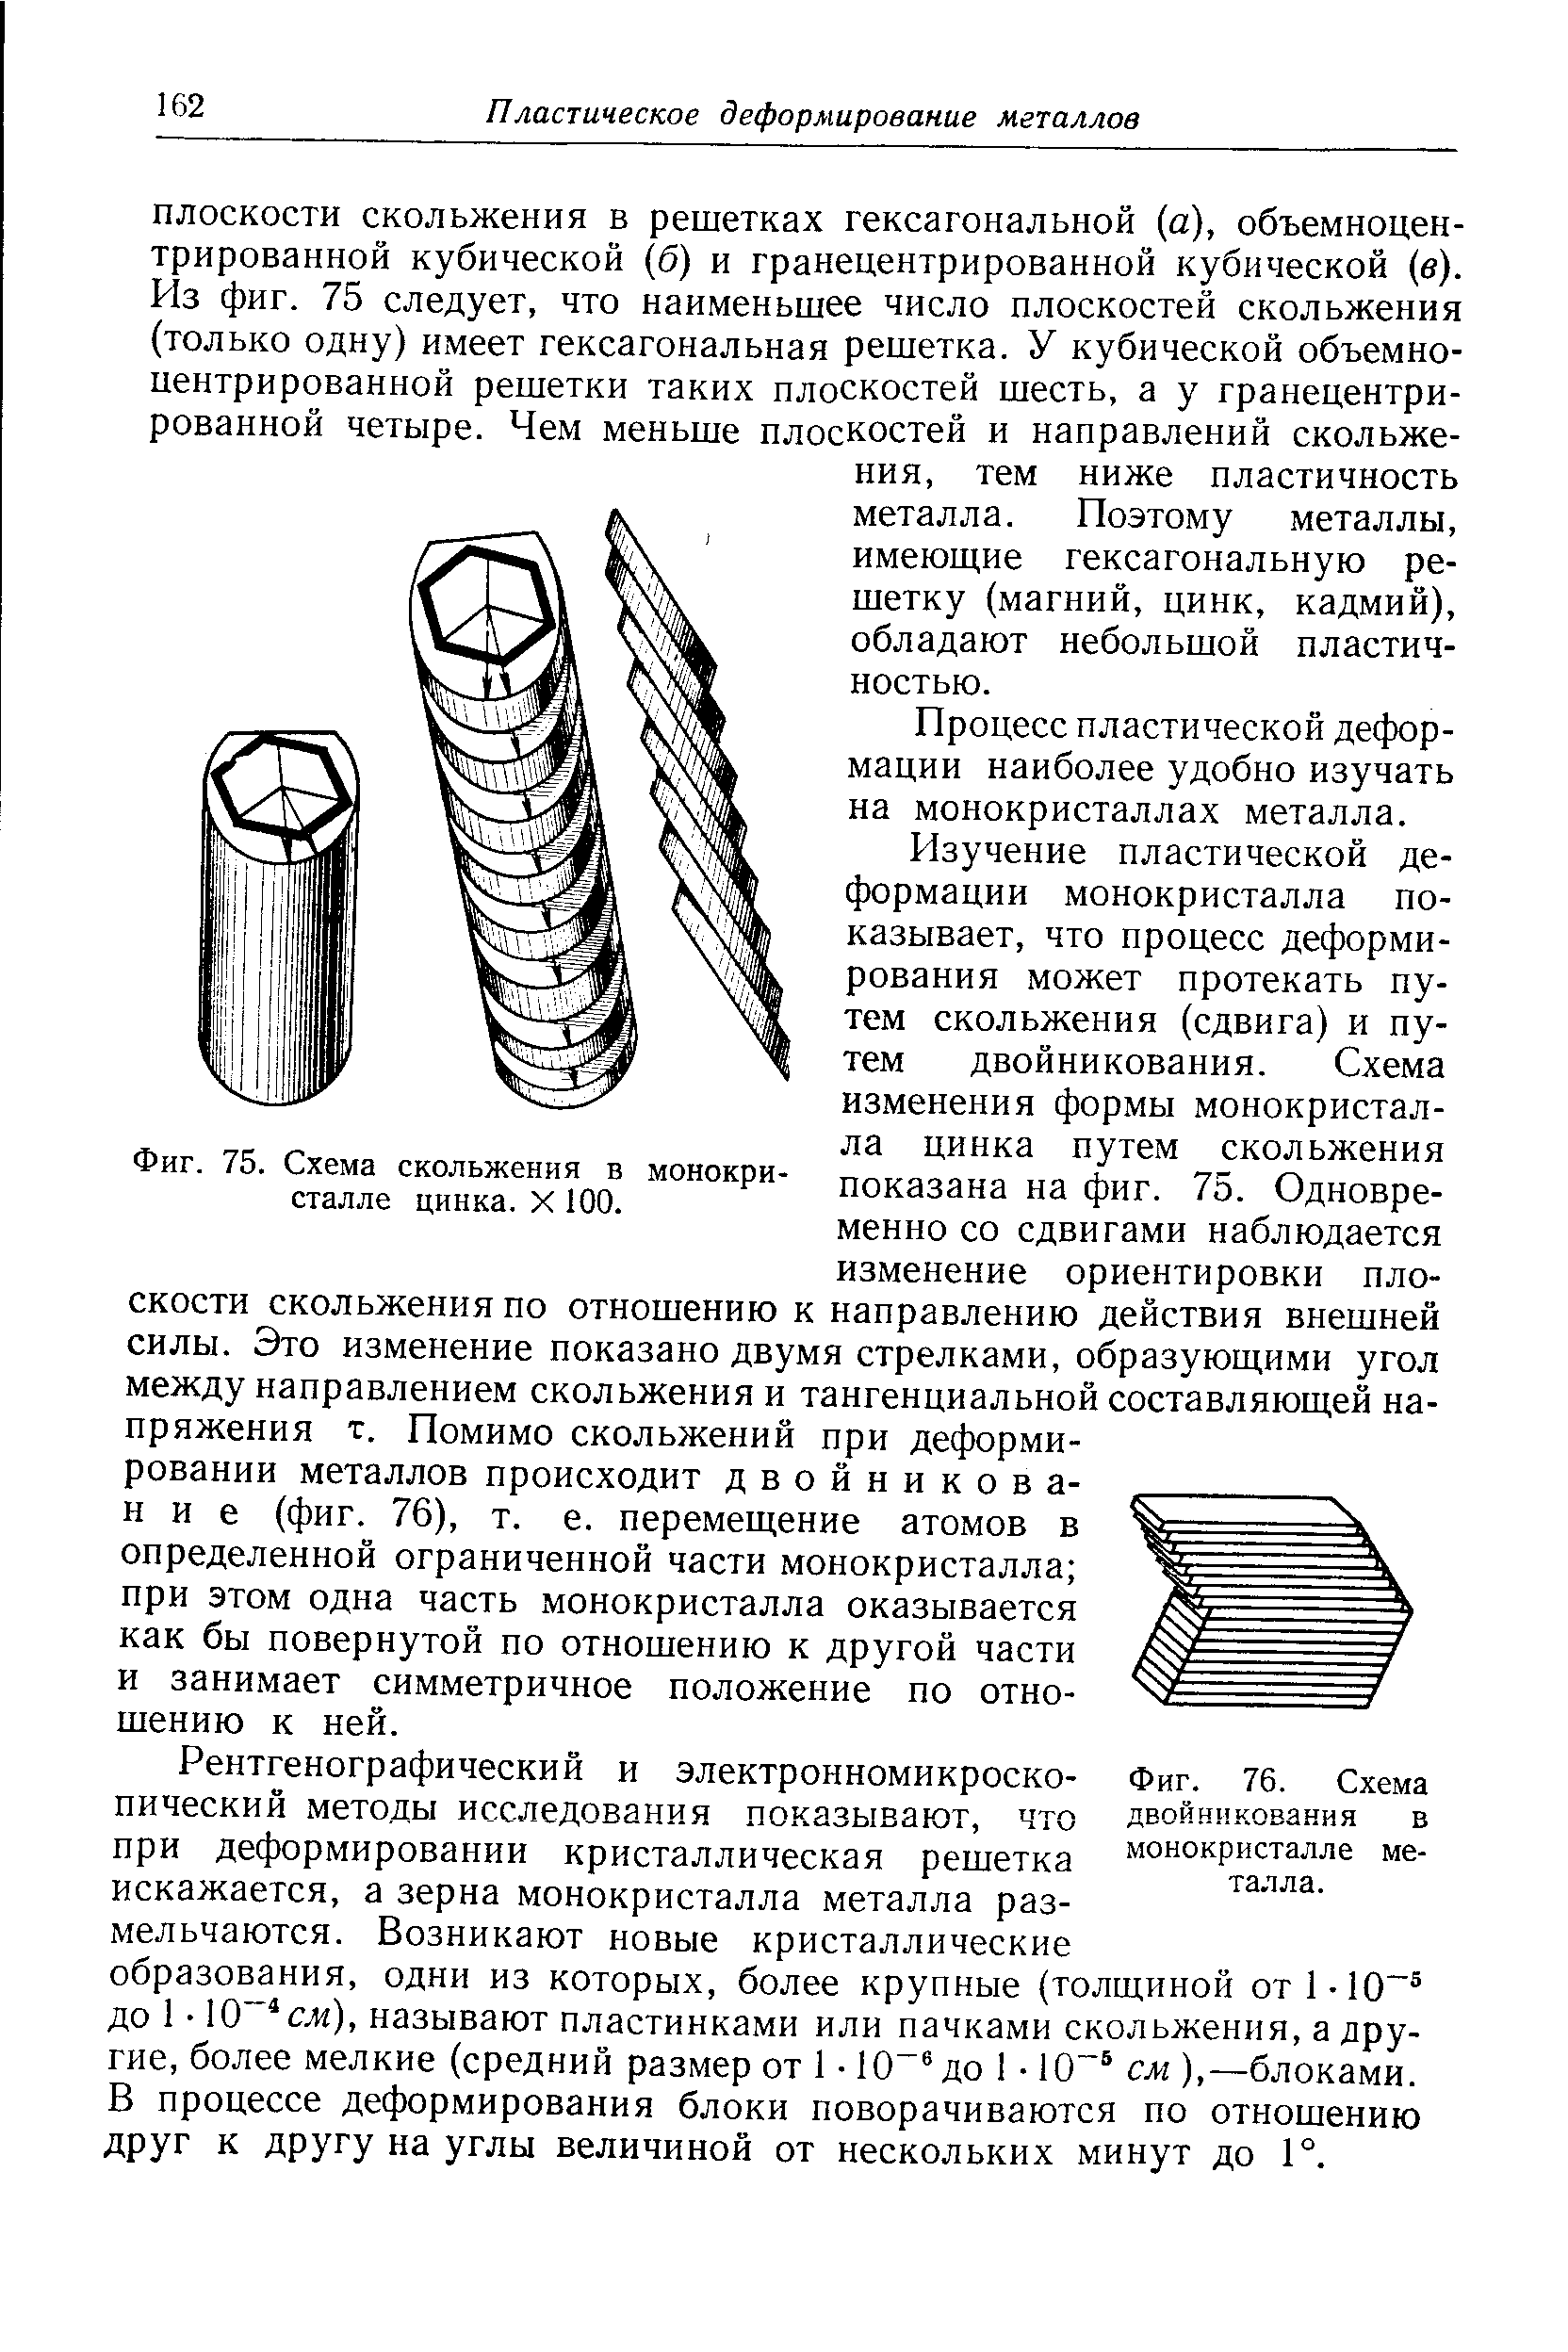 Фиг. 76. Схема двойникования в монокристалле металла.
